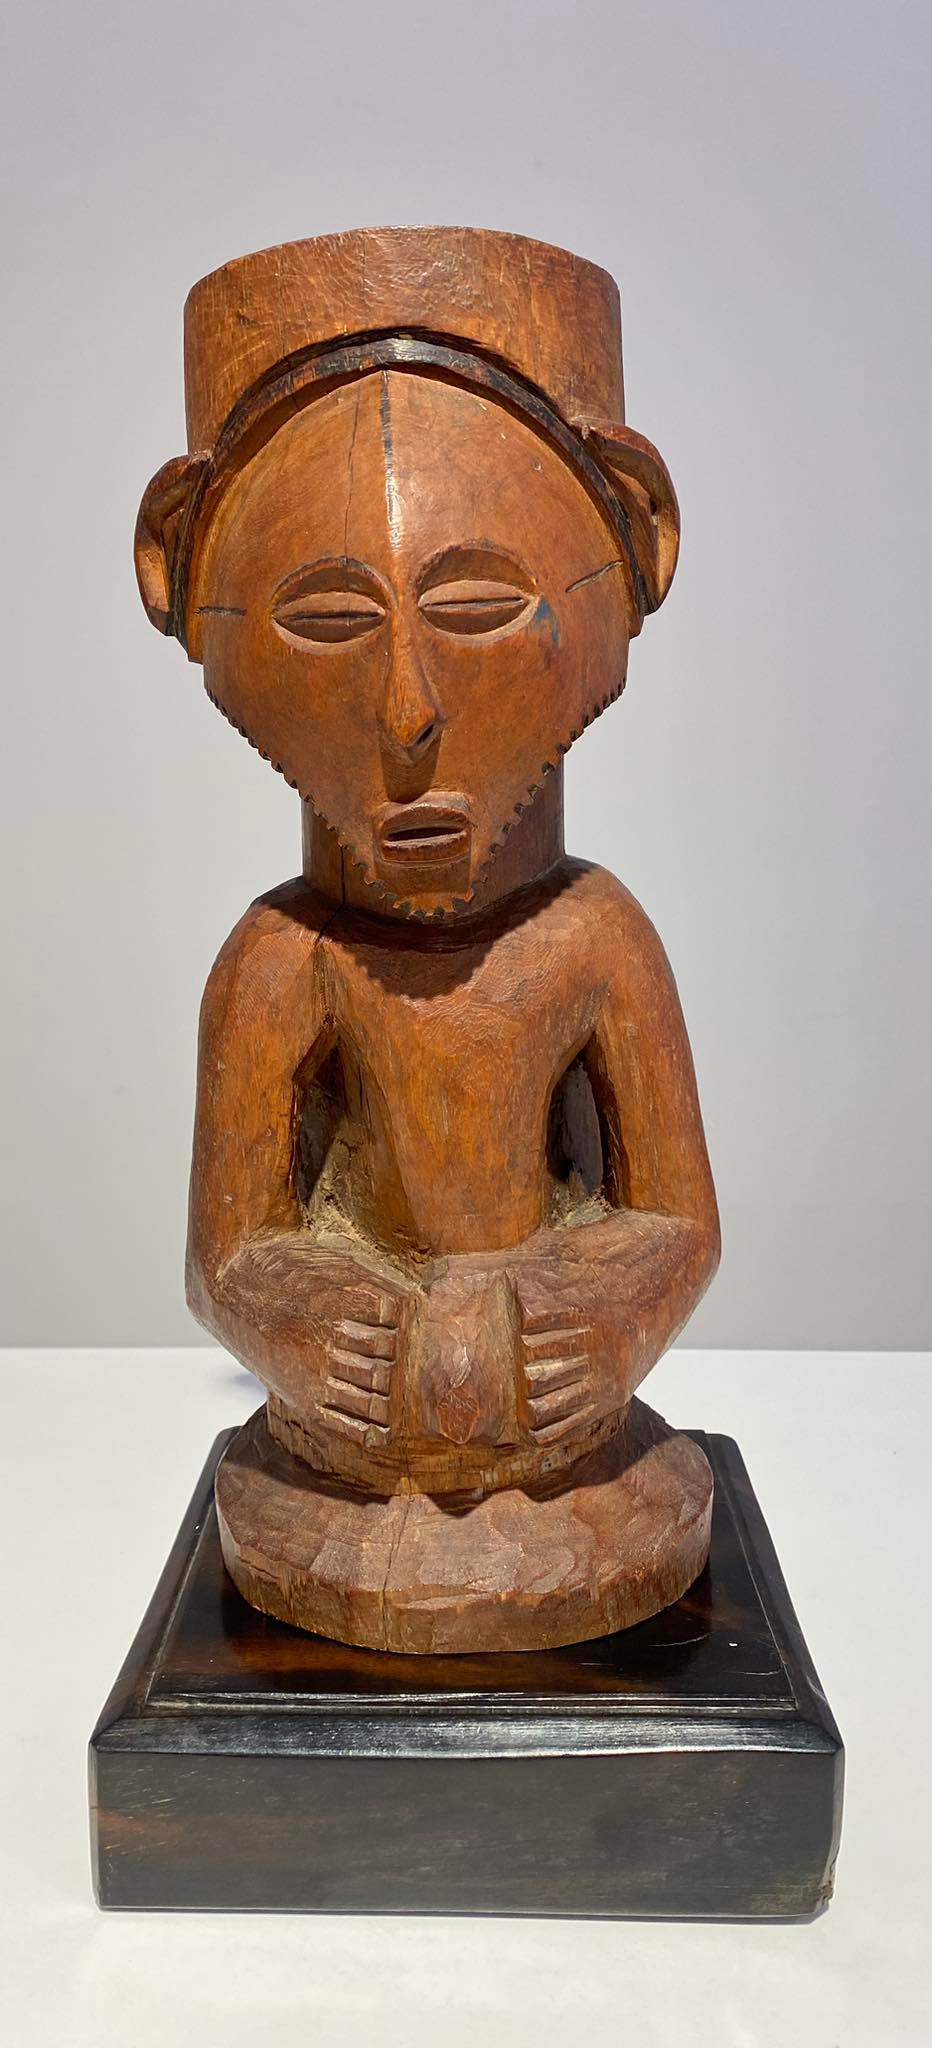 Statue Kusu / Congo joliment sculptée avec un beau visage, des yeux en amande et un visage triangulaire avec une barbe. Le haut de la tête est un grand trou à charcher la statue puissante et a patine d'âge et d'utilisation. 
Cette statue, utilisée